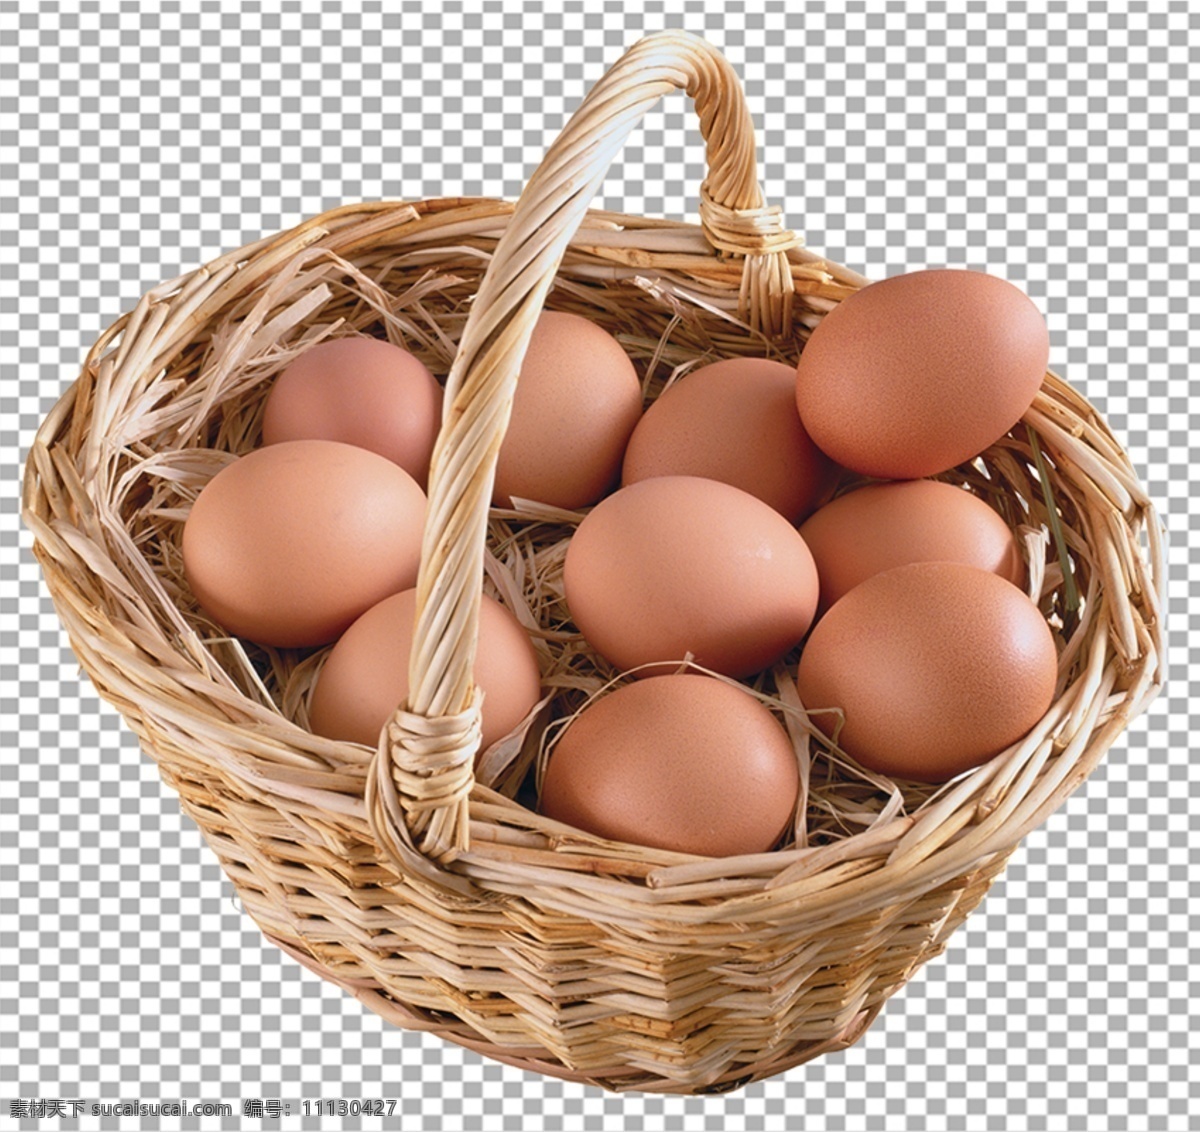 鸡蛋图片 鸡蛋 土鸡蛋 鸭蛋 农家 天然 有机 咸鸭蛋 营养 无公害 煎鸡蛋 蛋 煎蛋 荷包蛋 溏心蛋 蛋黄 蛋清 png图 透明图 新鲜 透明背景 透明底 免抠图 psd分层图 通道 高清 设计素材 分层